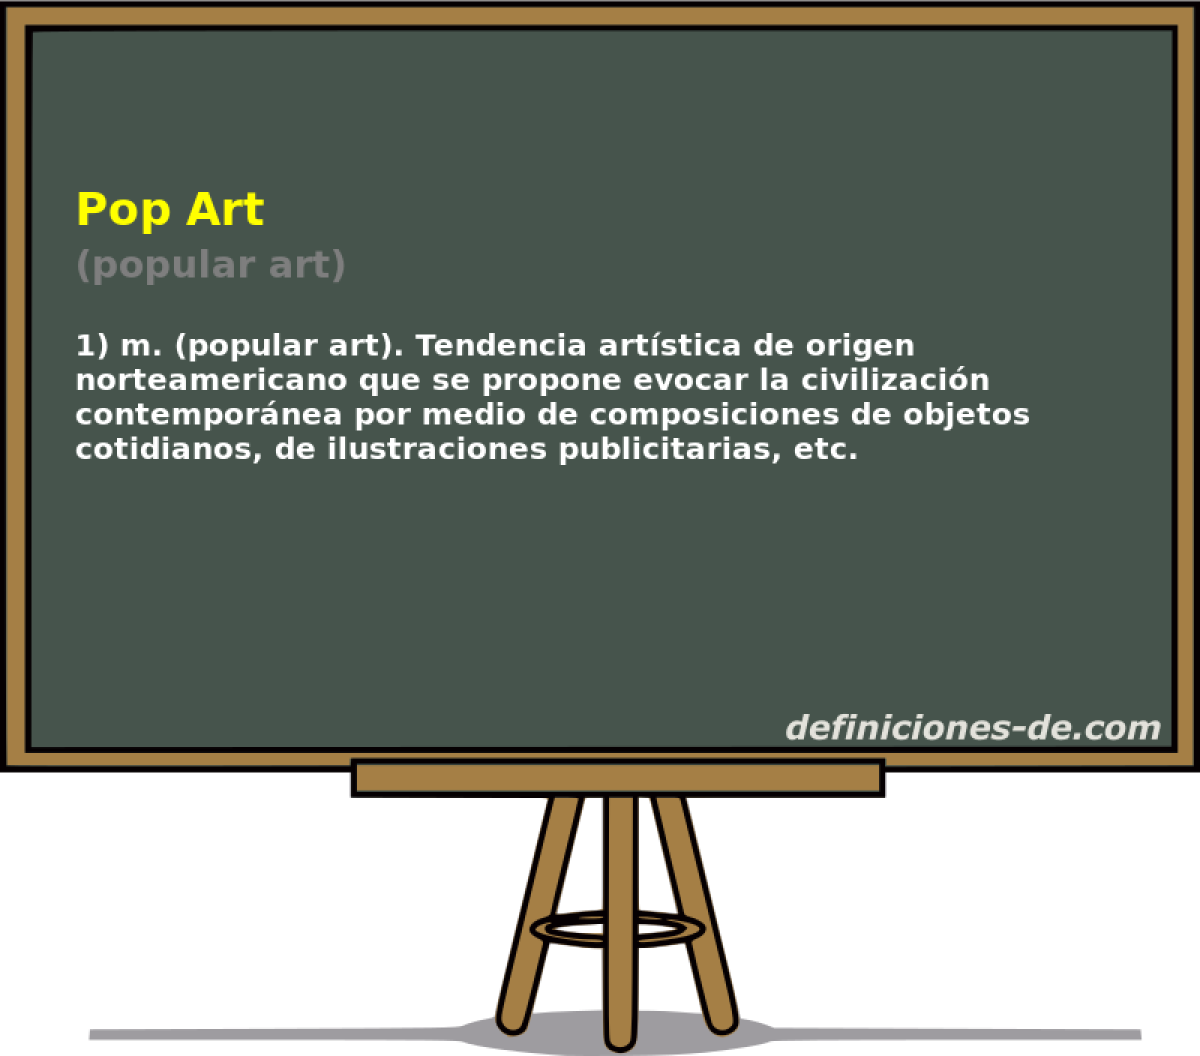 Pop Art (popular art)